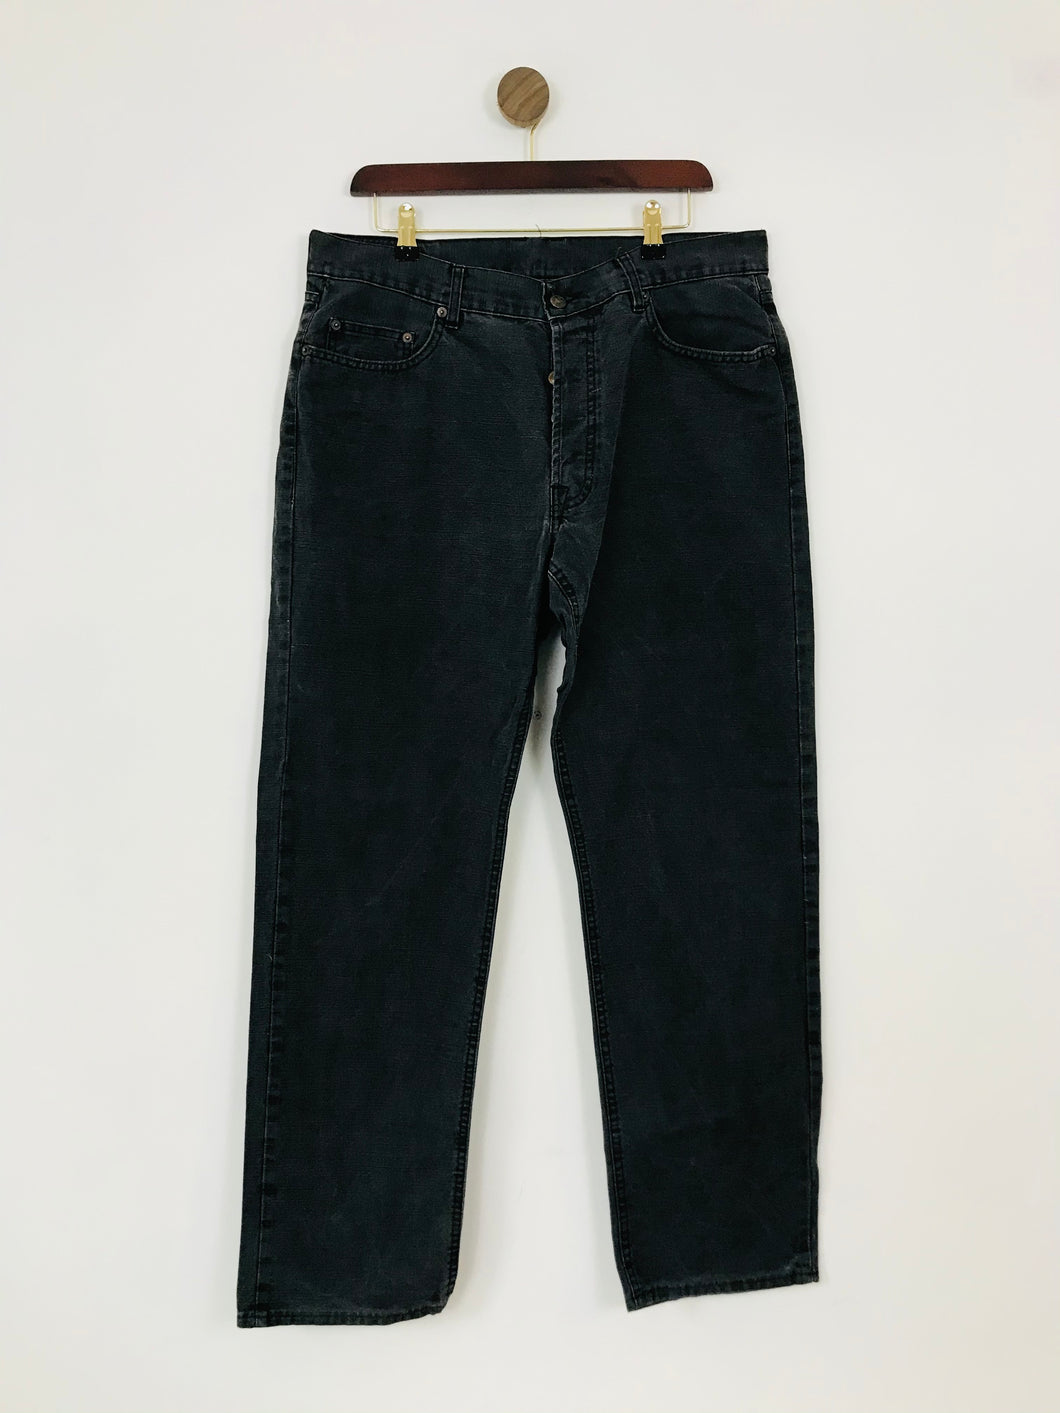 Marlboro Classics Men's Straight Jeans | W36 L32 | Grey